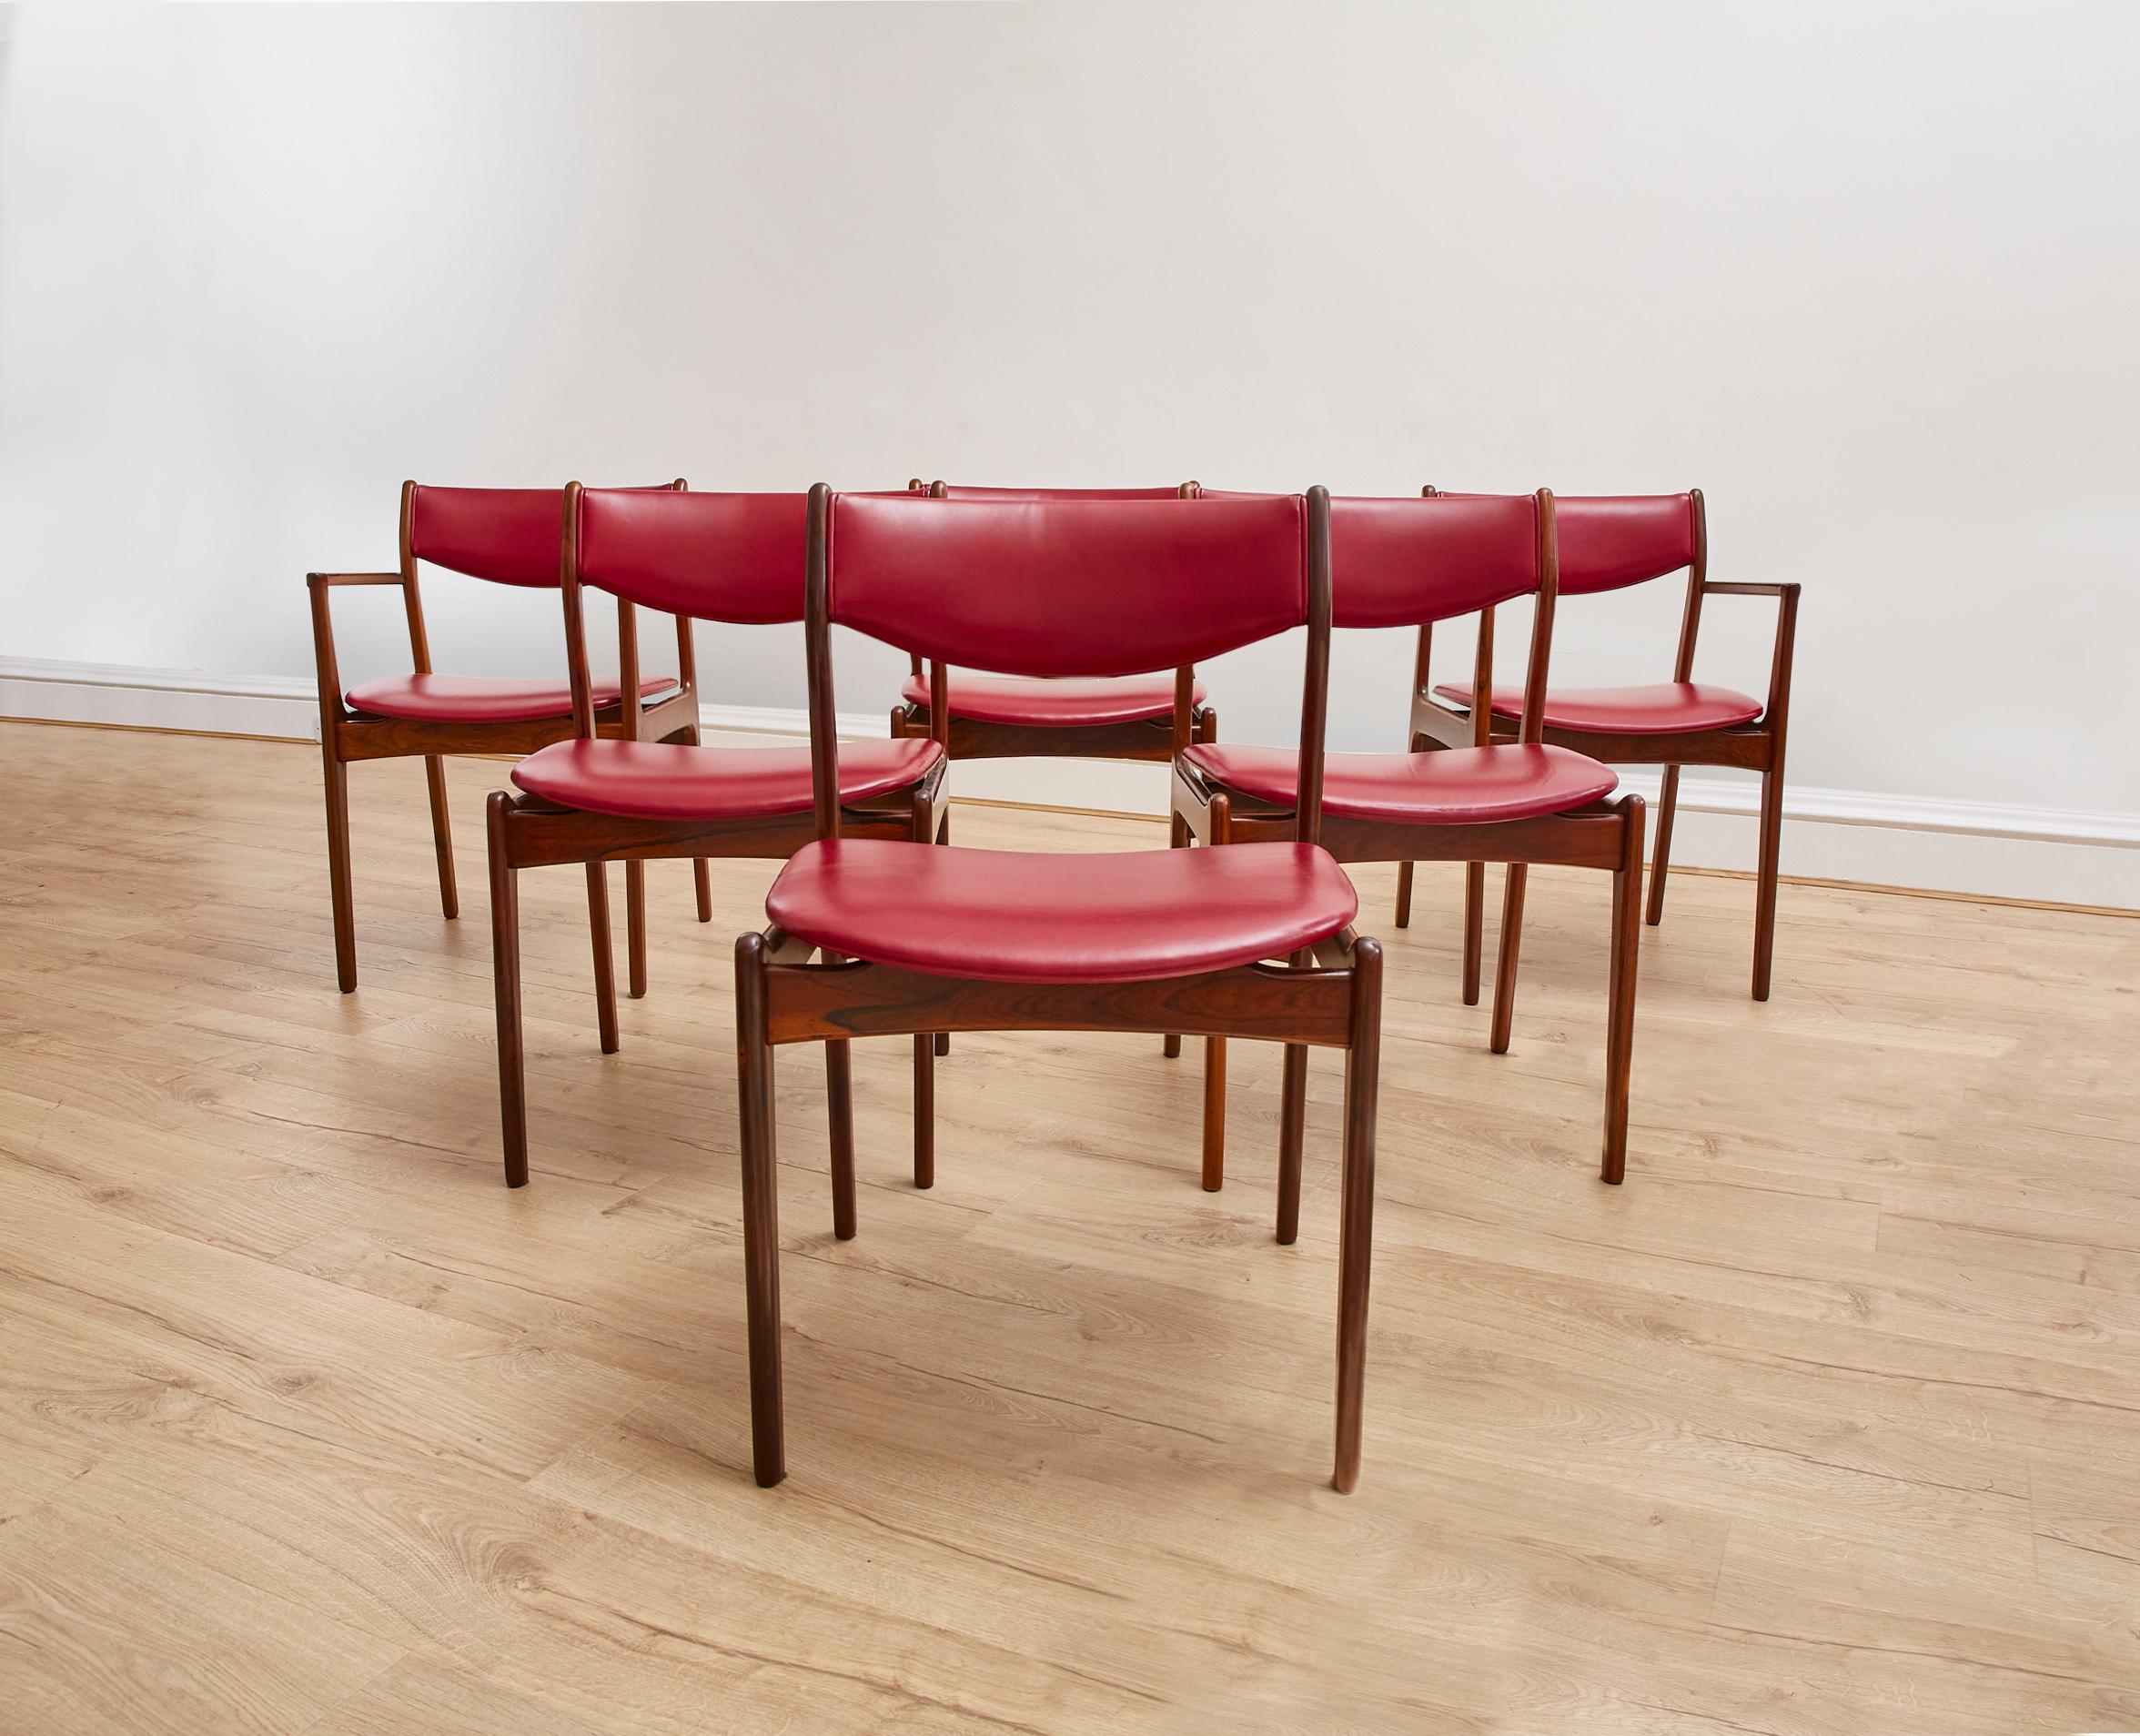 Cet ensemble de 6 chaises de salle à manger des années 1960 (4 chaises, 2 carvers) est en superbe état. Le revêtement en cuir bordeaux et la finition en bois de rose foncé confèrent un aspect sophistiqué à la salle à manger.